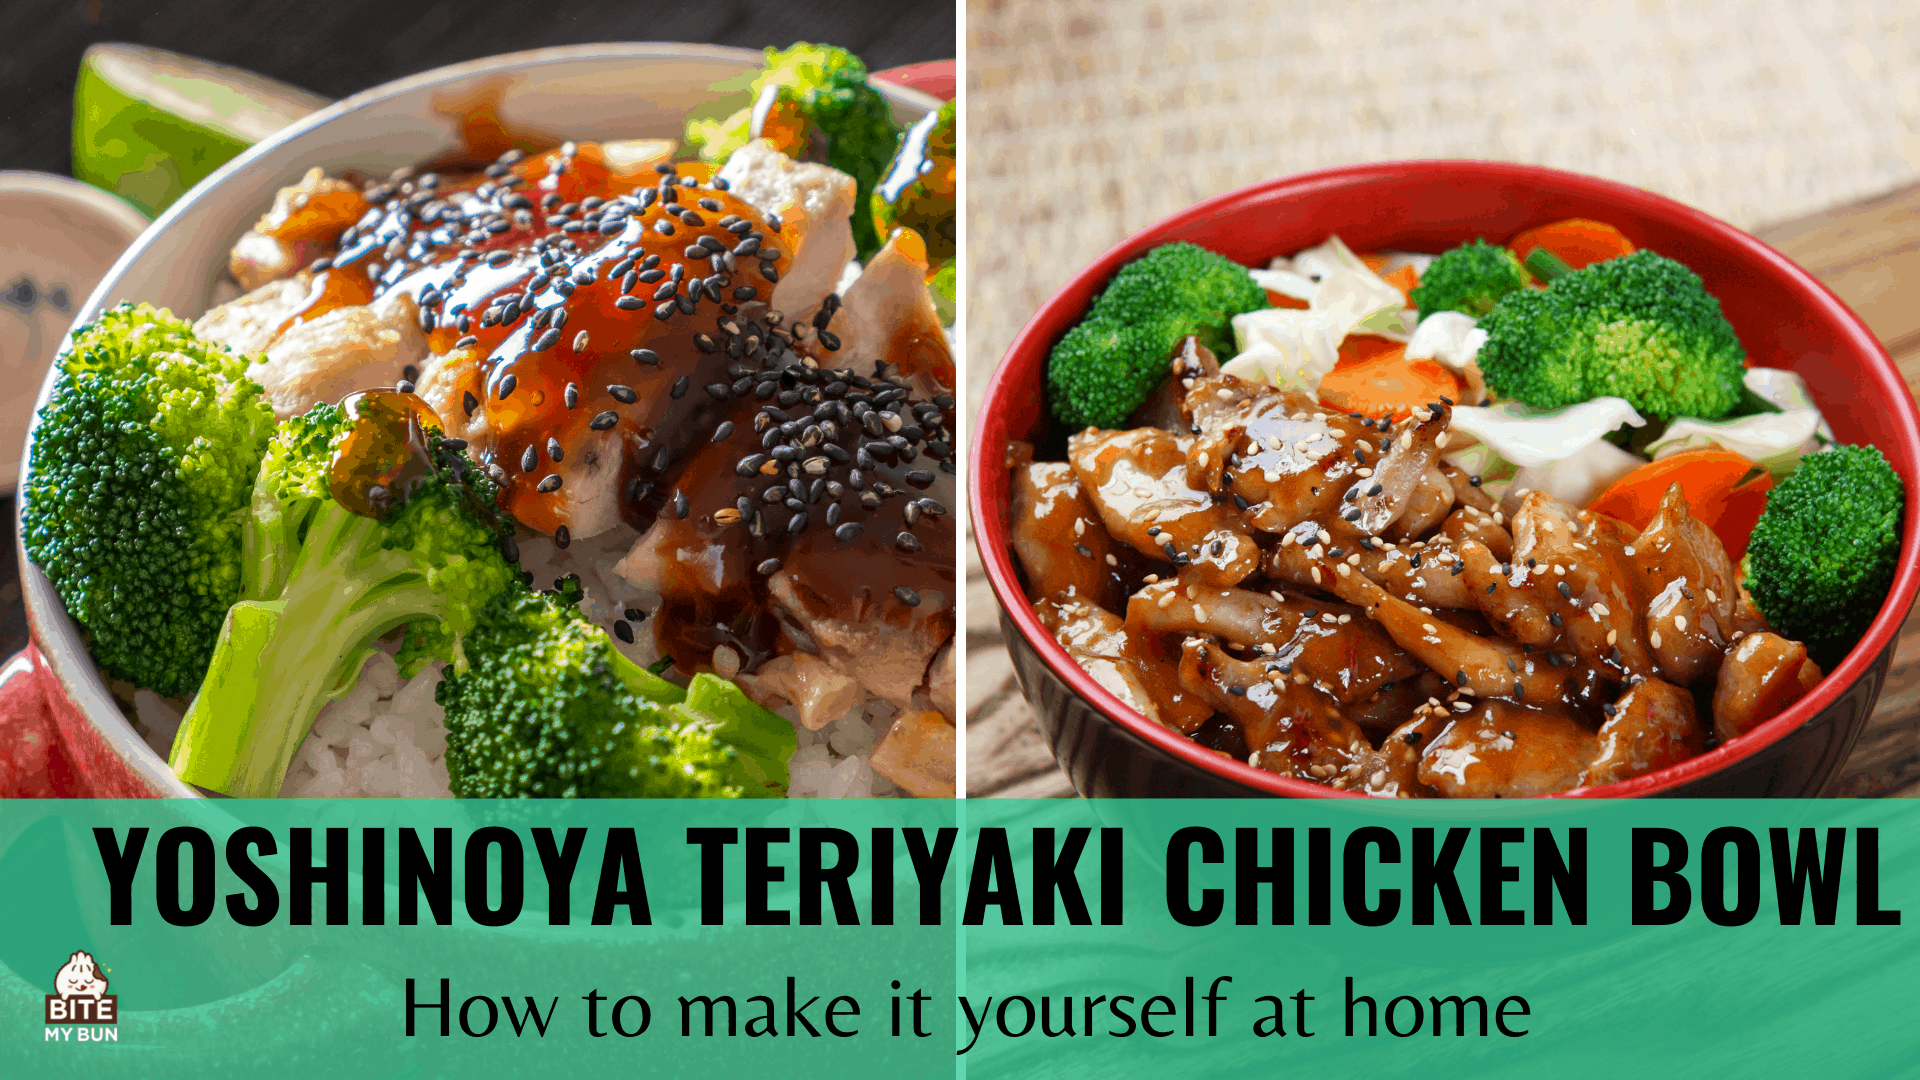 Yoshinoya teriyaki chicken bowl | How to make it yourself at home